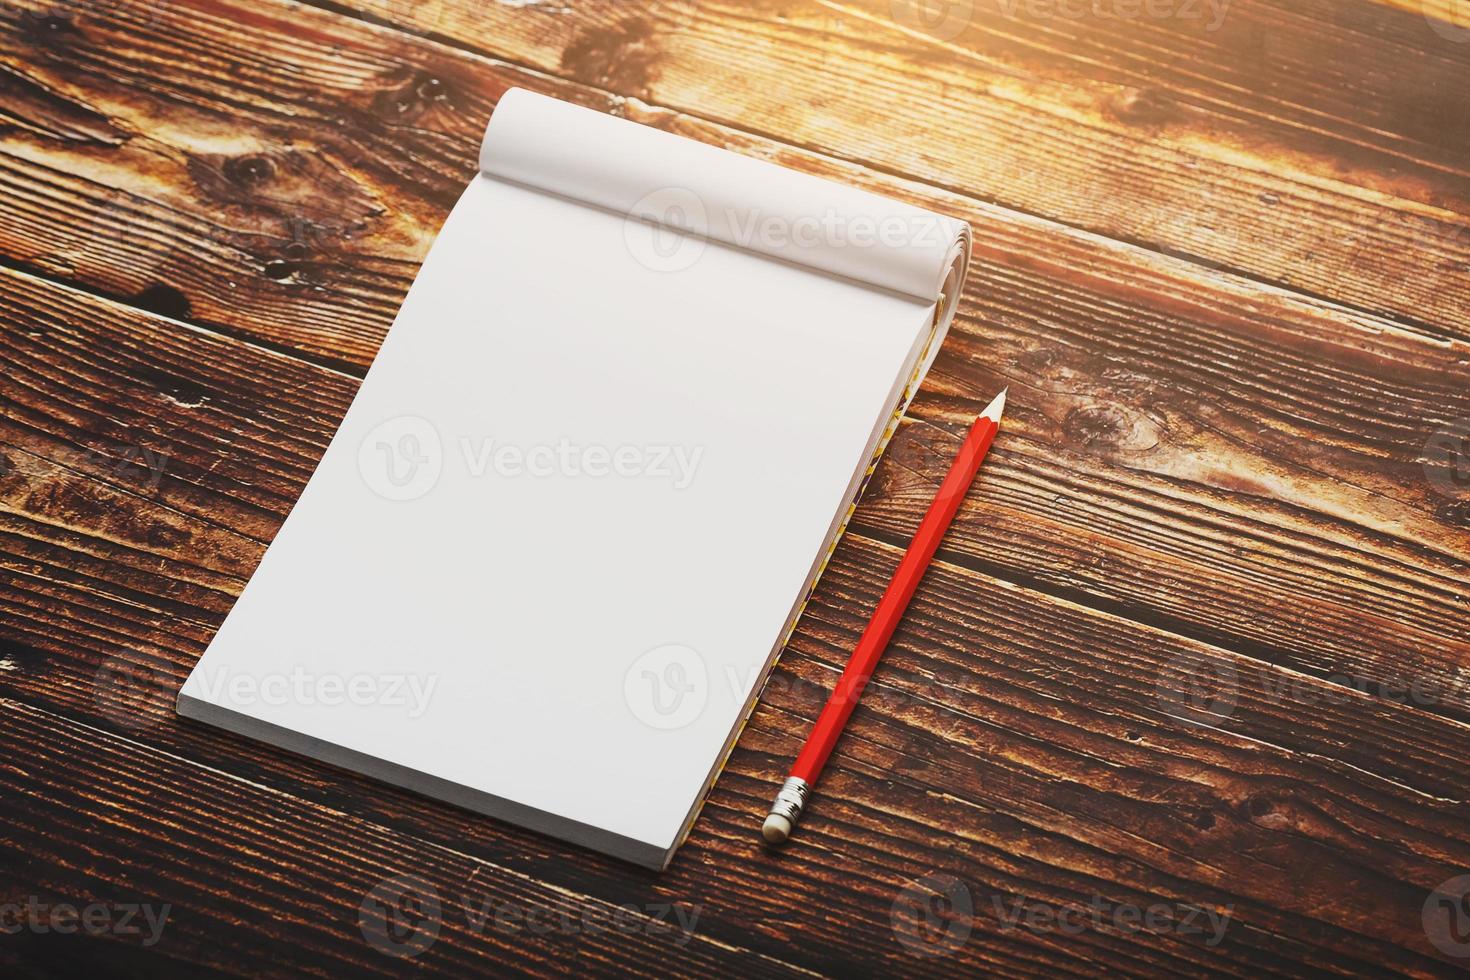 cahier avec un crayon rouge sur fond marron avec lumière du soleil chaude, pour l'écriture. espace vide libre pour écrire sur une feuille vierge d'un cahier. photo